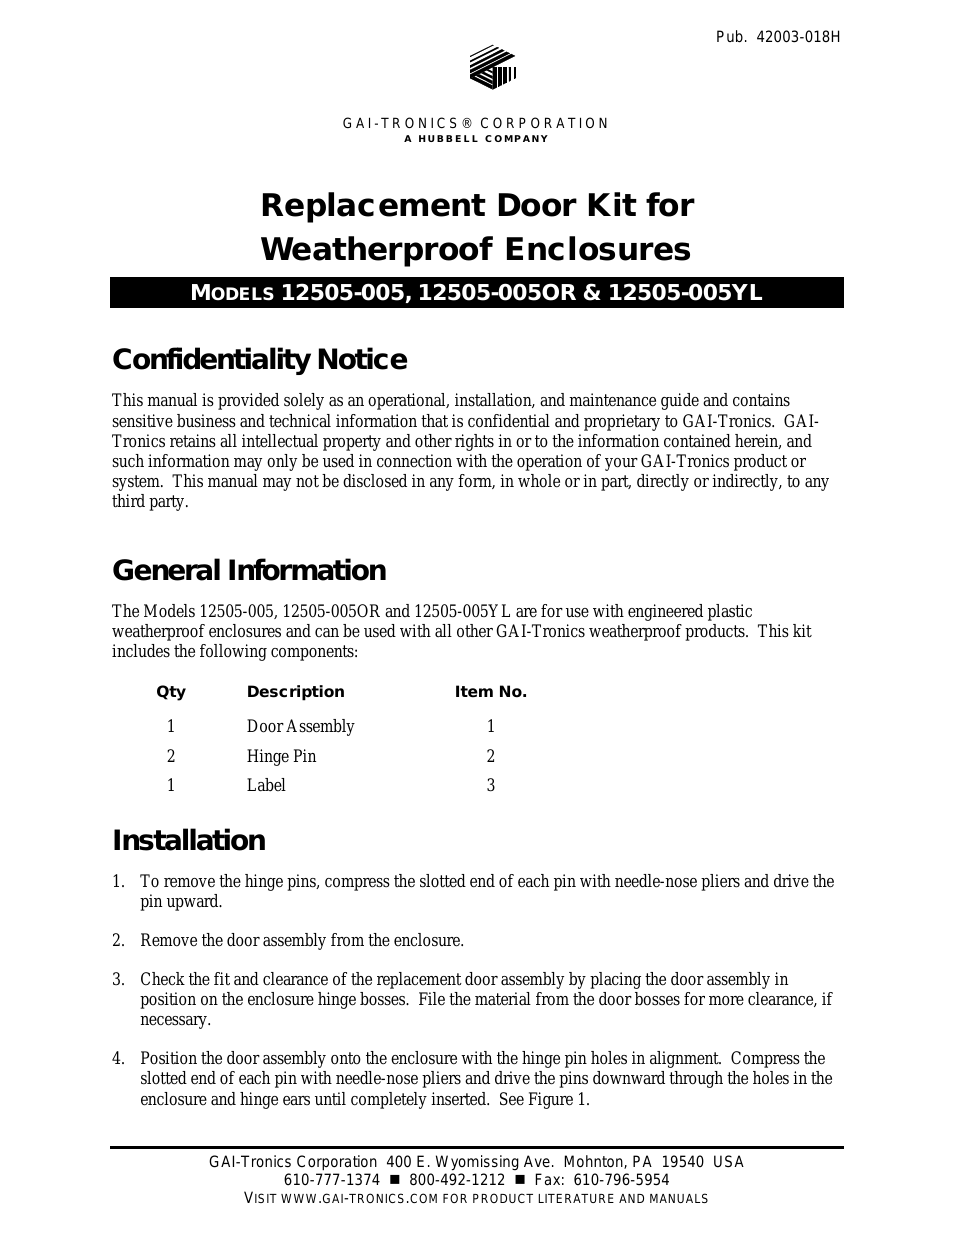 12505-004 Repl. Door Kit for Weatherproof Enclosure